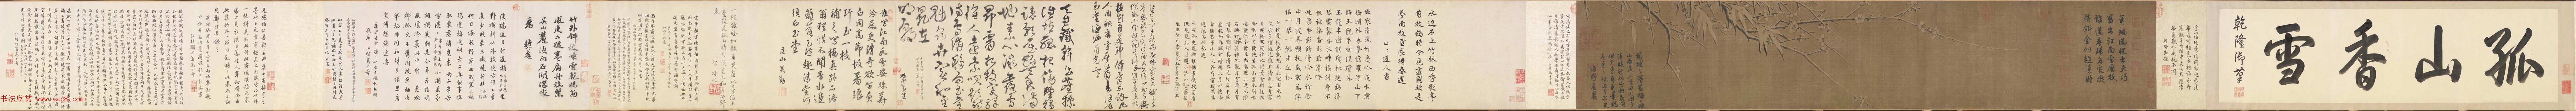 杨无咎《雪梅图卷》北京故宫博物院藏